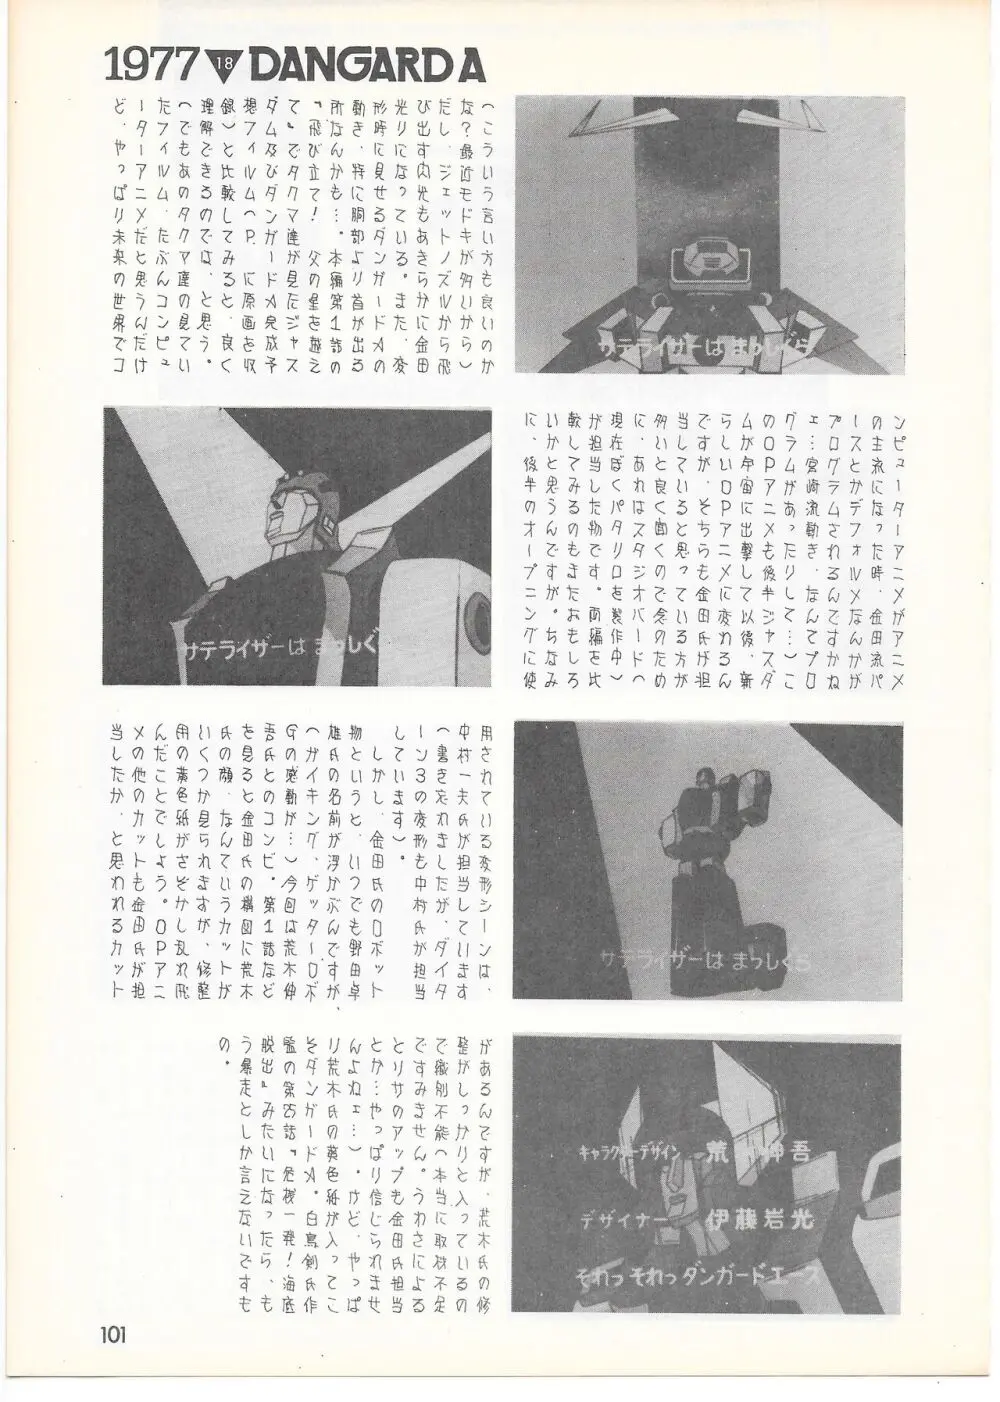 THE ANIMATOR 1 金田伊功特集号 96ページ